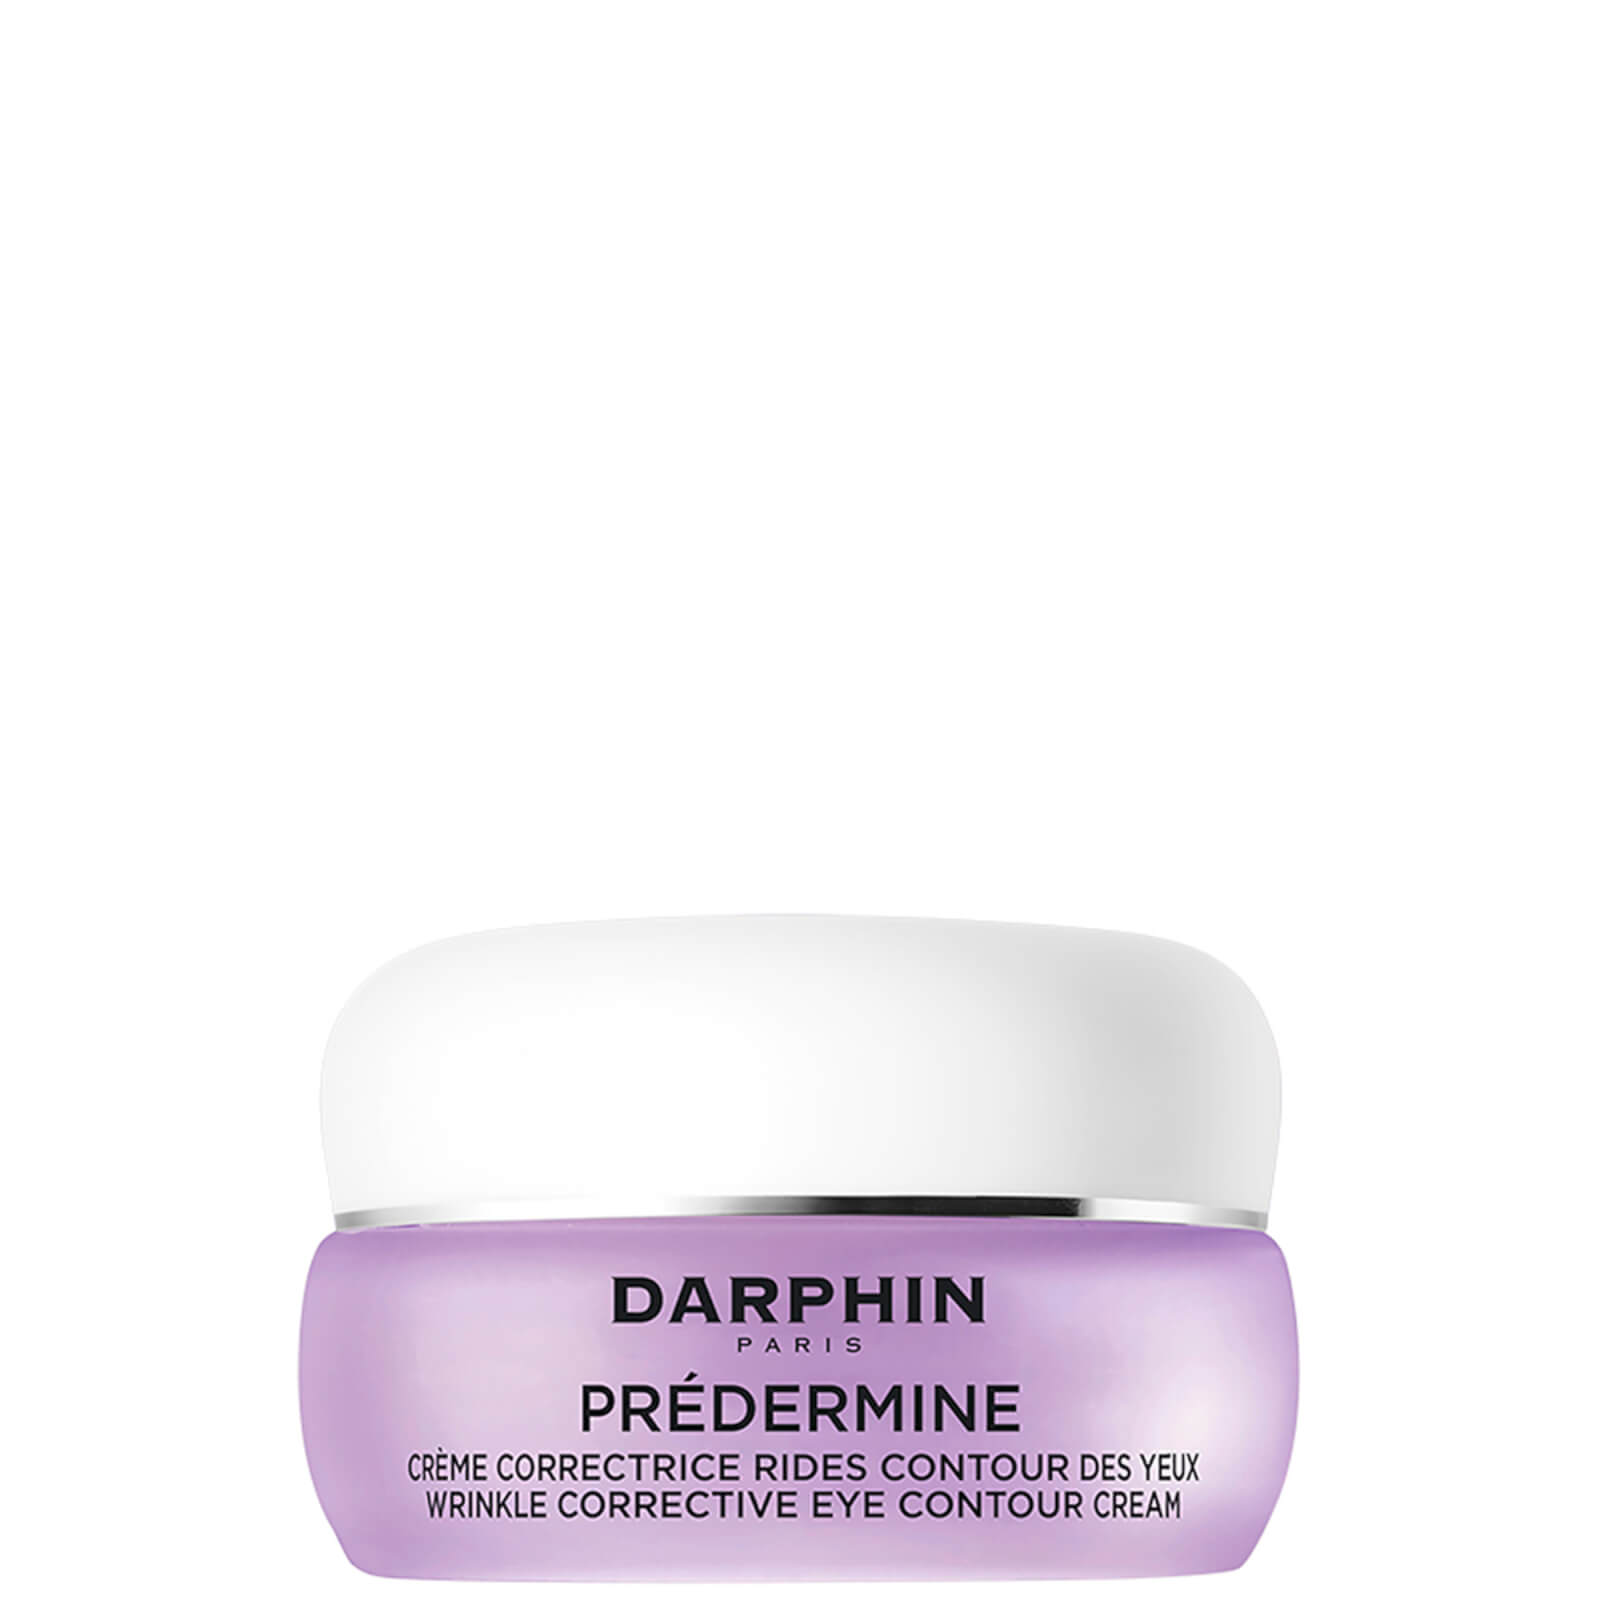 Photos - Cream / Lotion Darphin Predermine Wrinkle Corrective Eye Contour Cream Upgrade 15ml DE270 